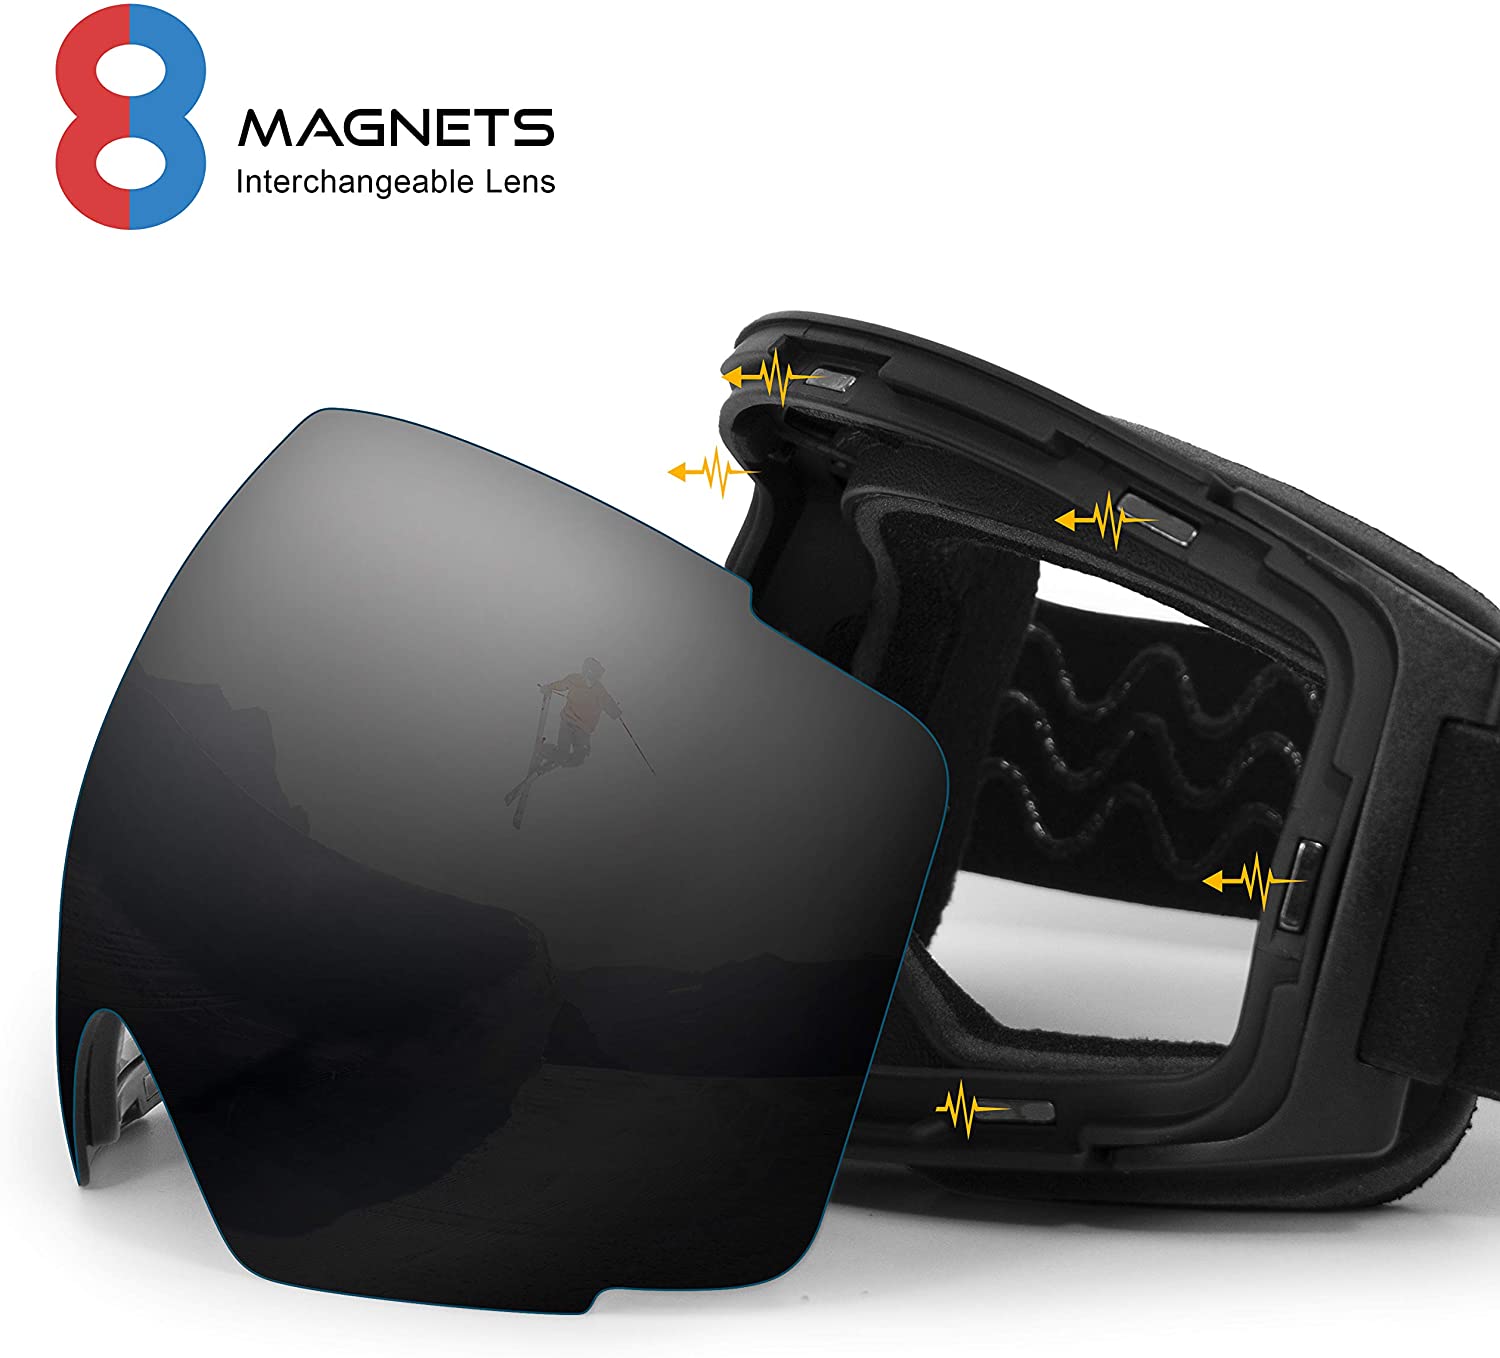 Stomp Ski Goggles PRO - Frameless, Interchangeable Lens 100% UV400 Protection Snow Goggles for Men & Women (Black) - image 3 of 7